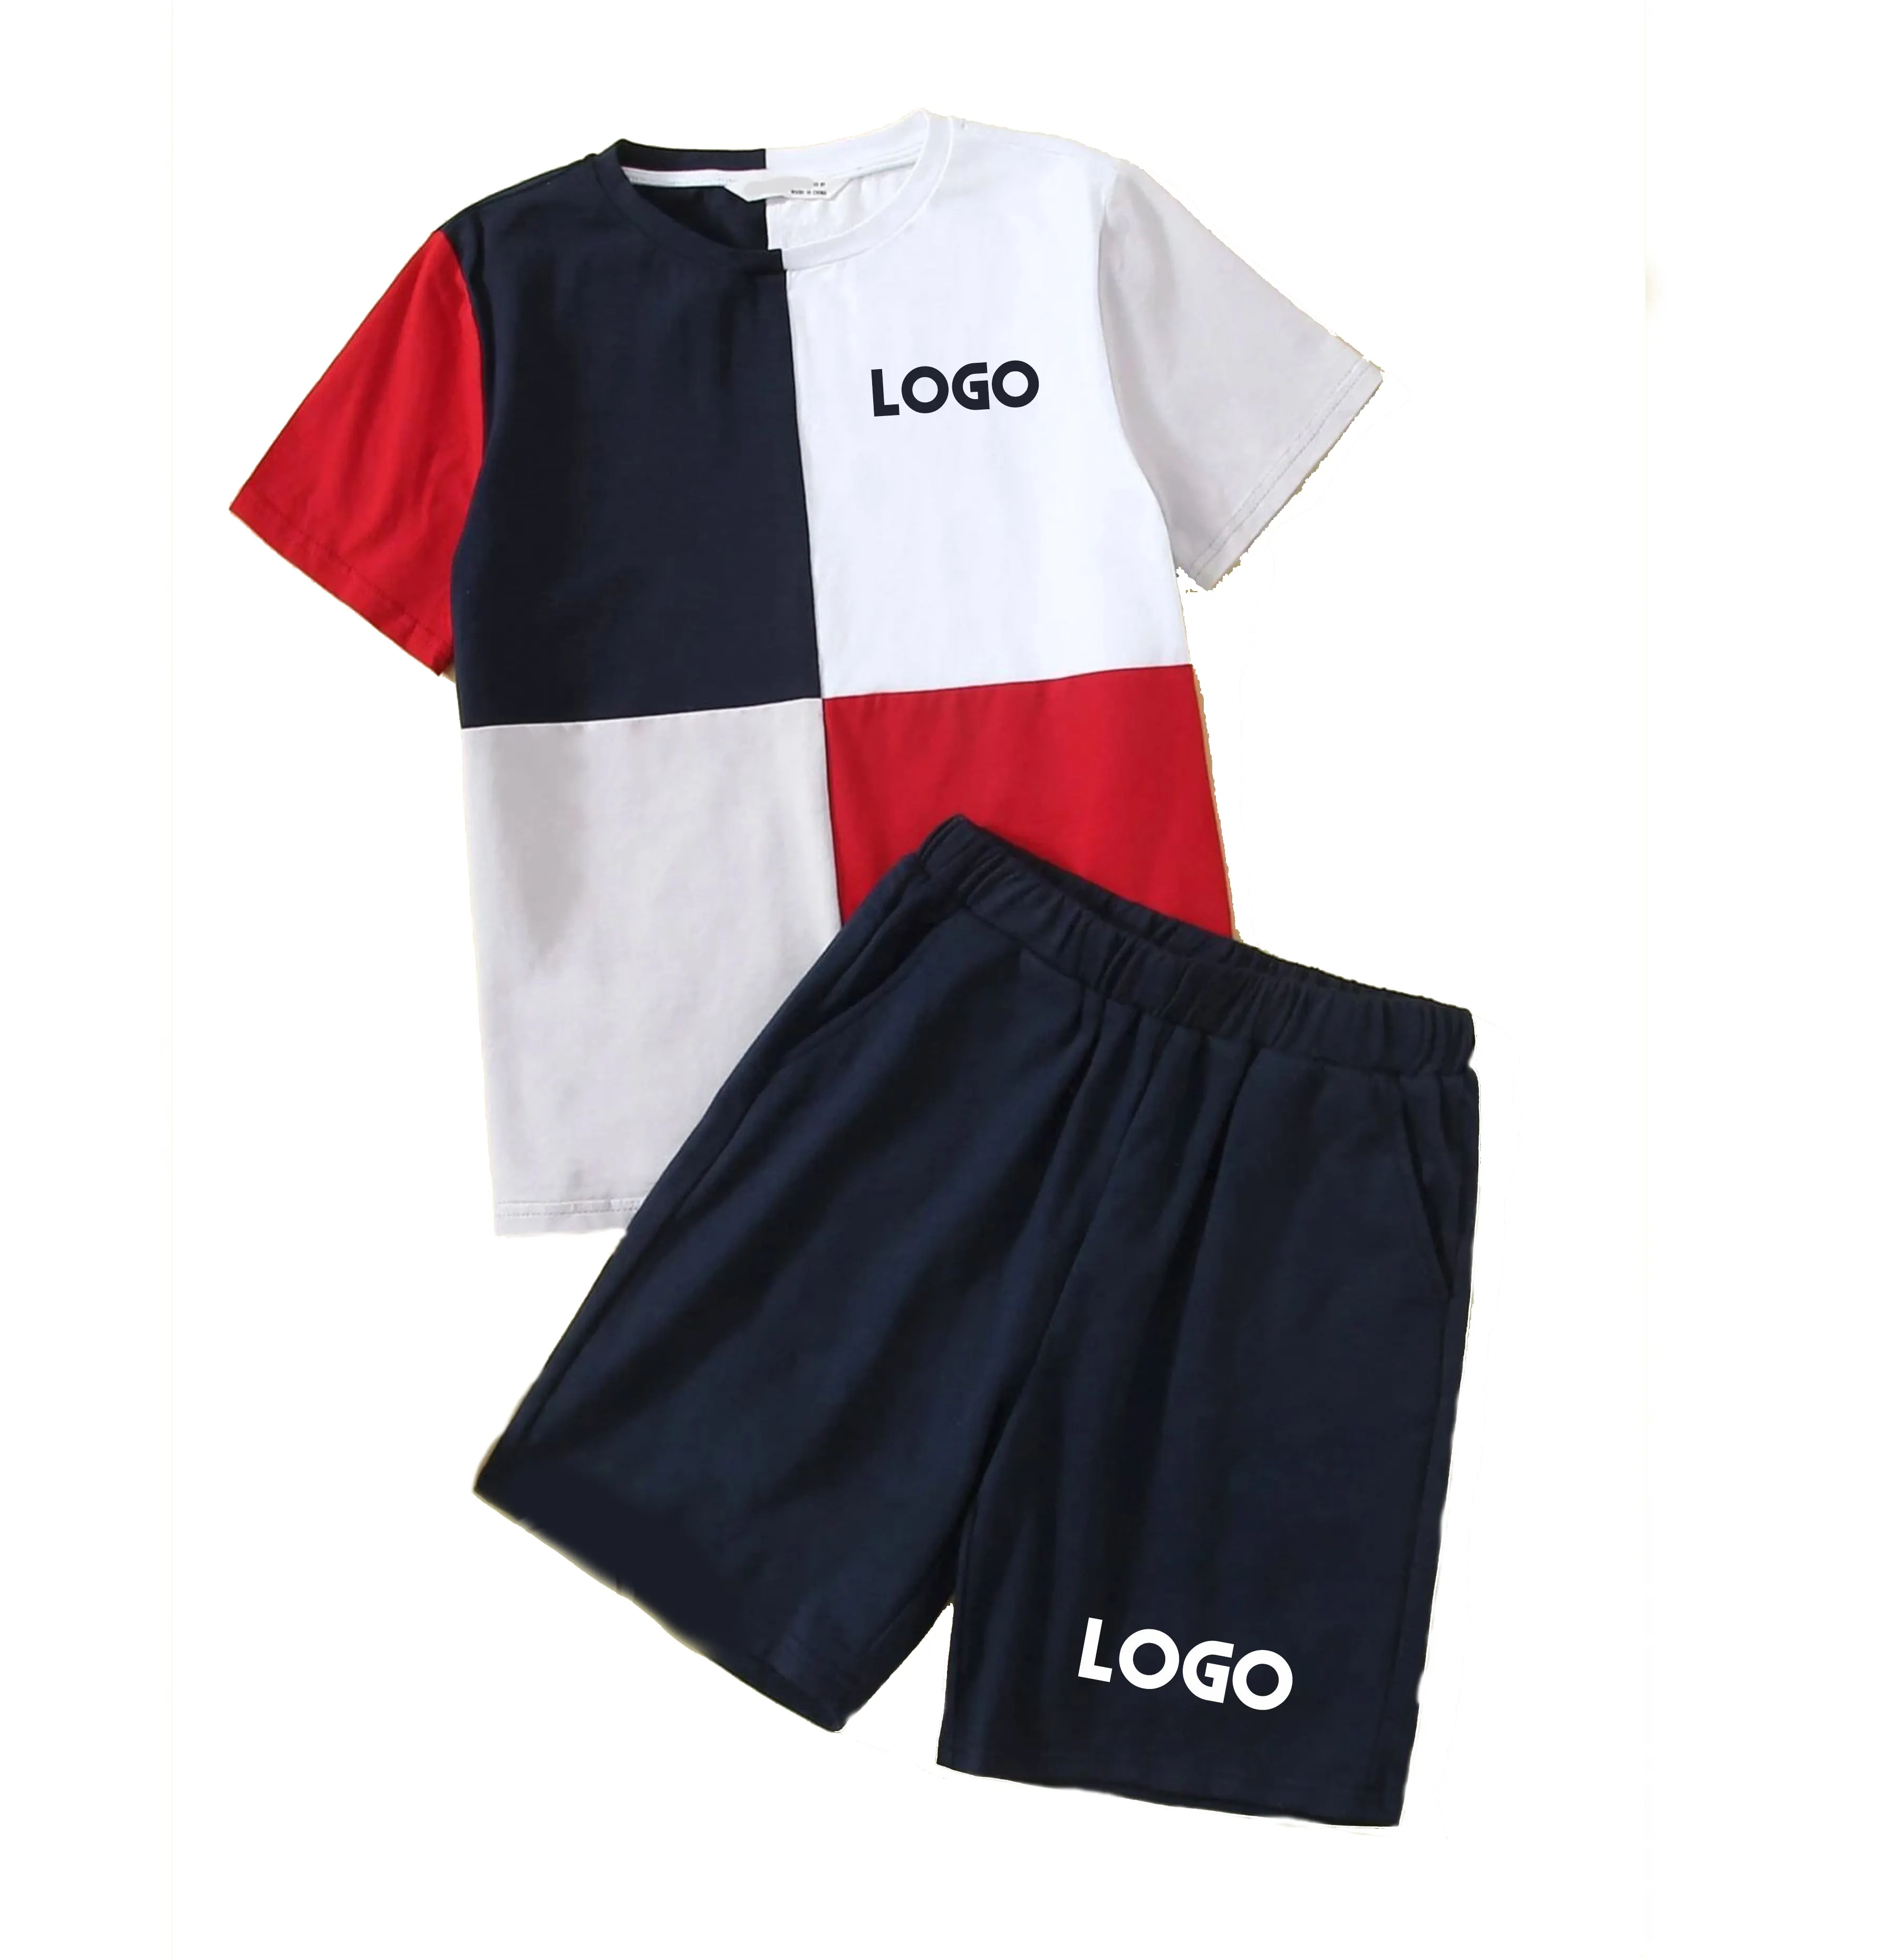 Kinder Jungen Kleidung Set Baumwolle Kinder tragen kurze Ärmel T-Shirt und Shorts 2 Stück Set Baby Jungen Kleidung Kinder Shorts Sets